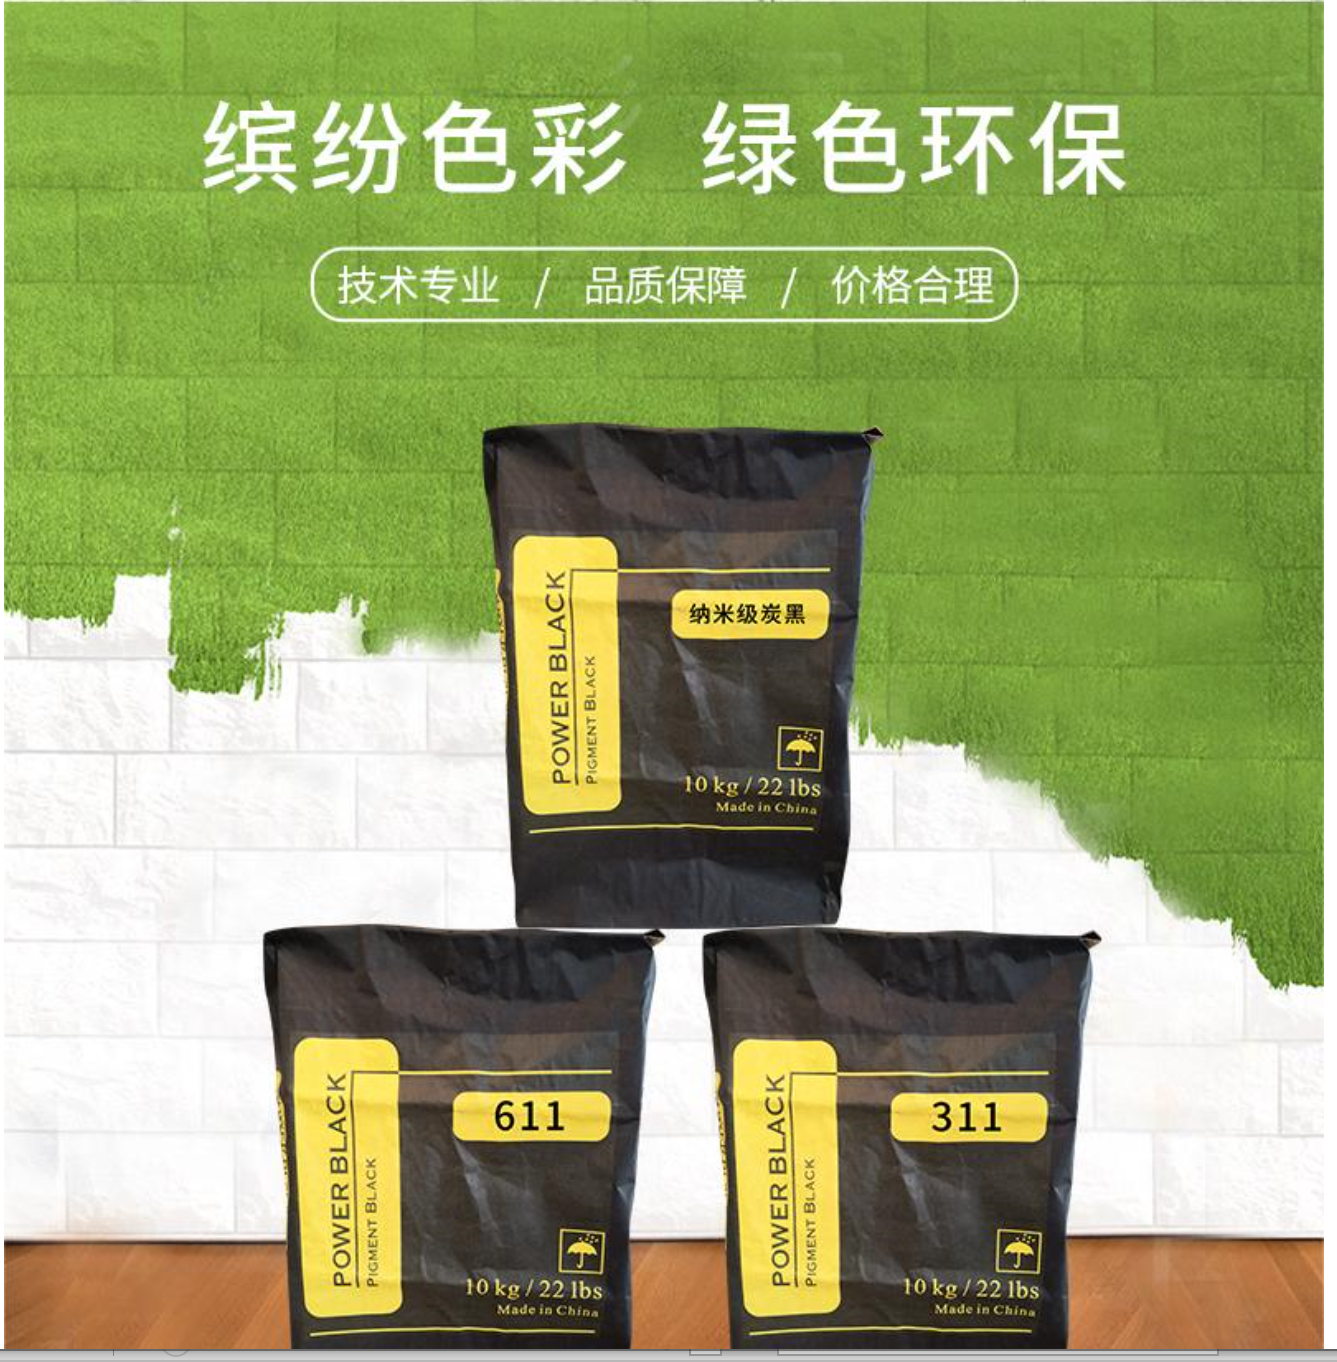 杭州高色素炭黑311 免研磨碳黑价格 水溶性炭黑色粉生产厂家